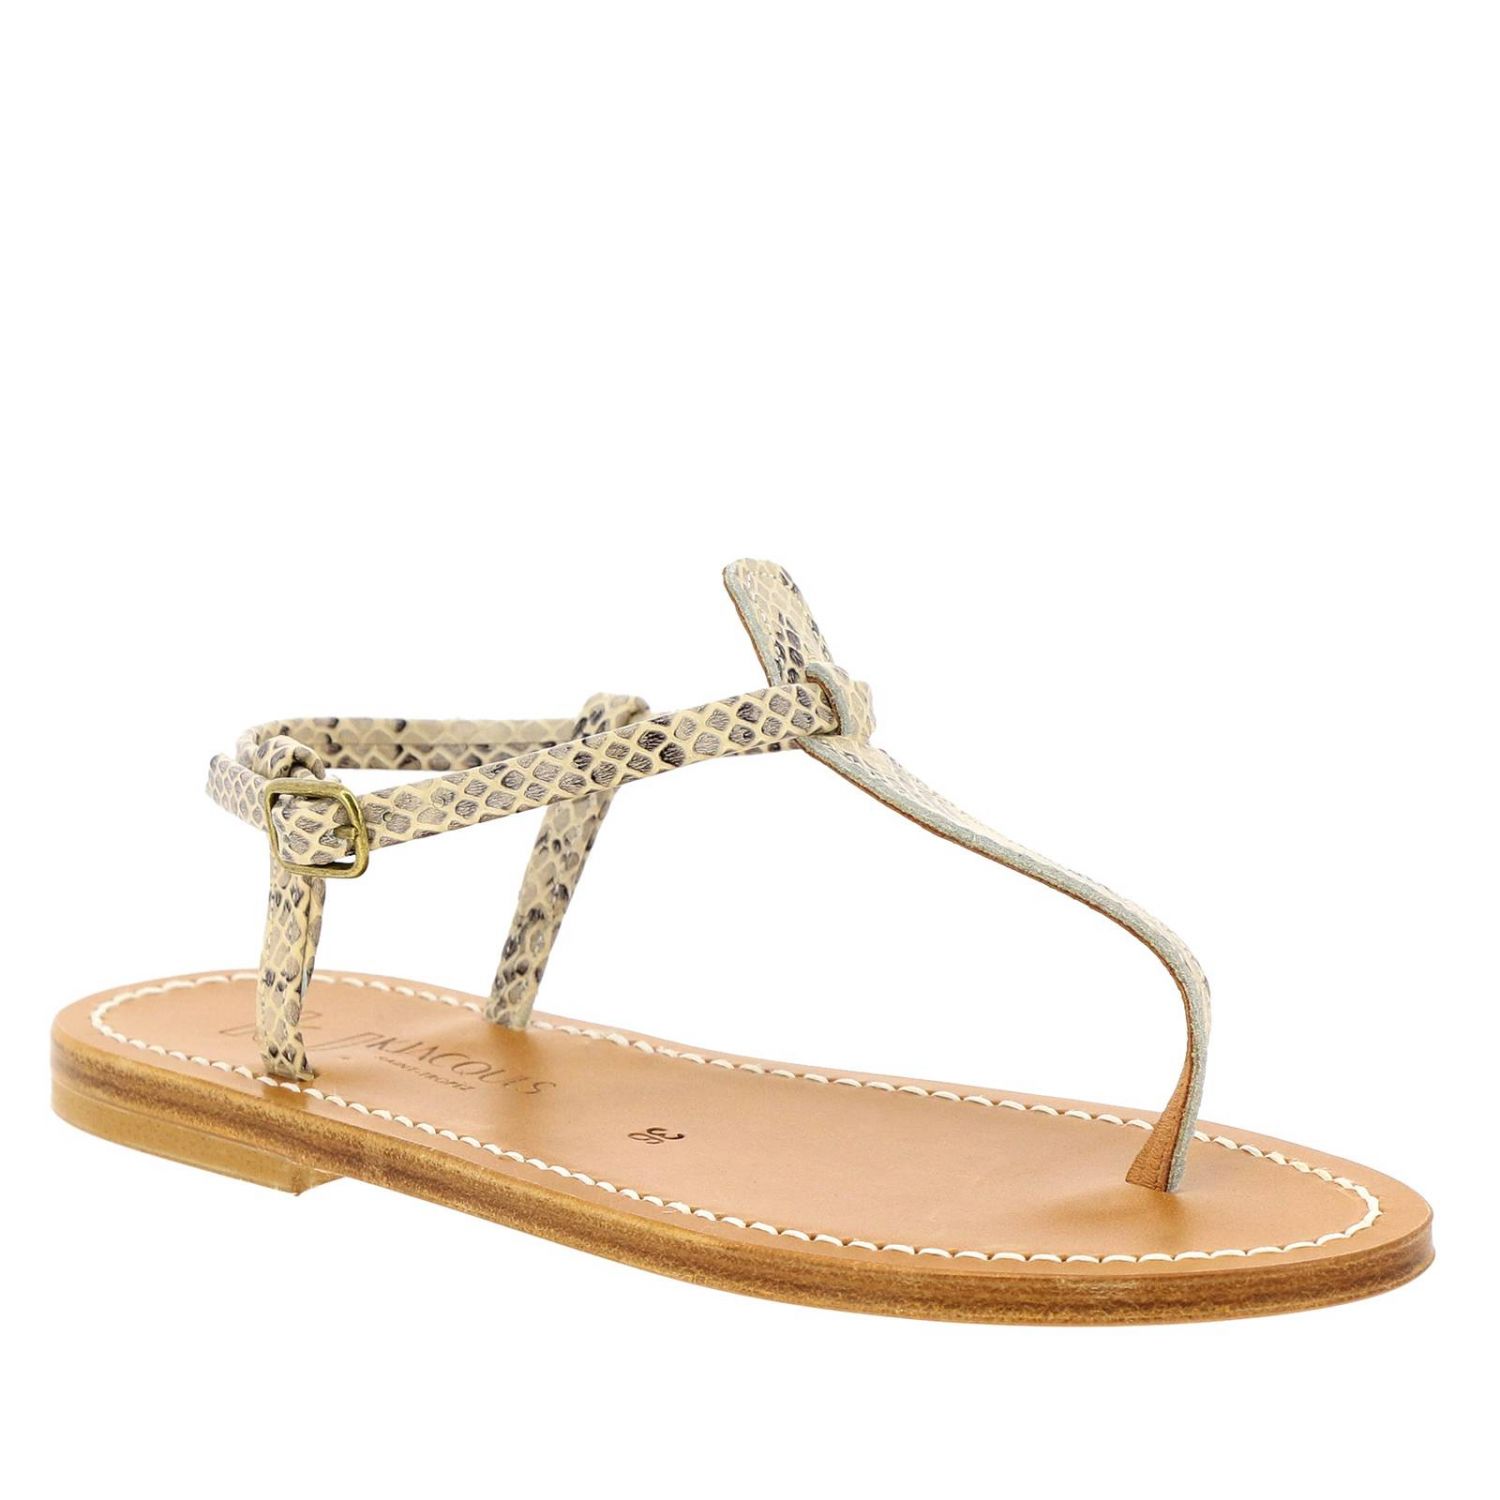 K. Jacques Outlet: Heeled sandals women | Flat Sandals K. Jacques Women ...